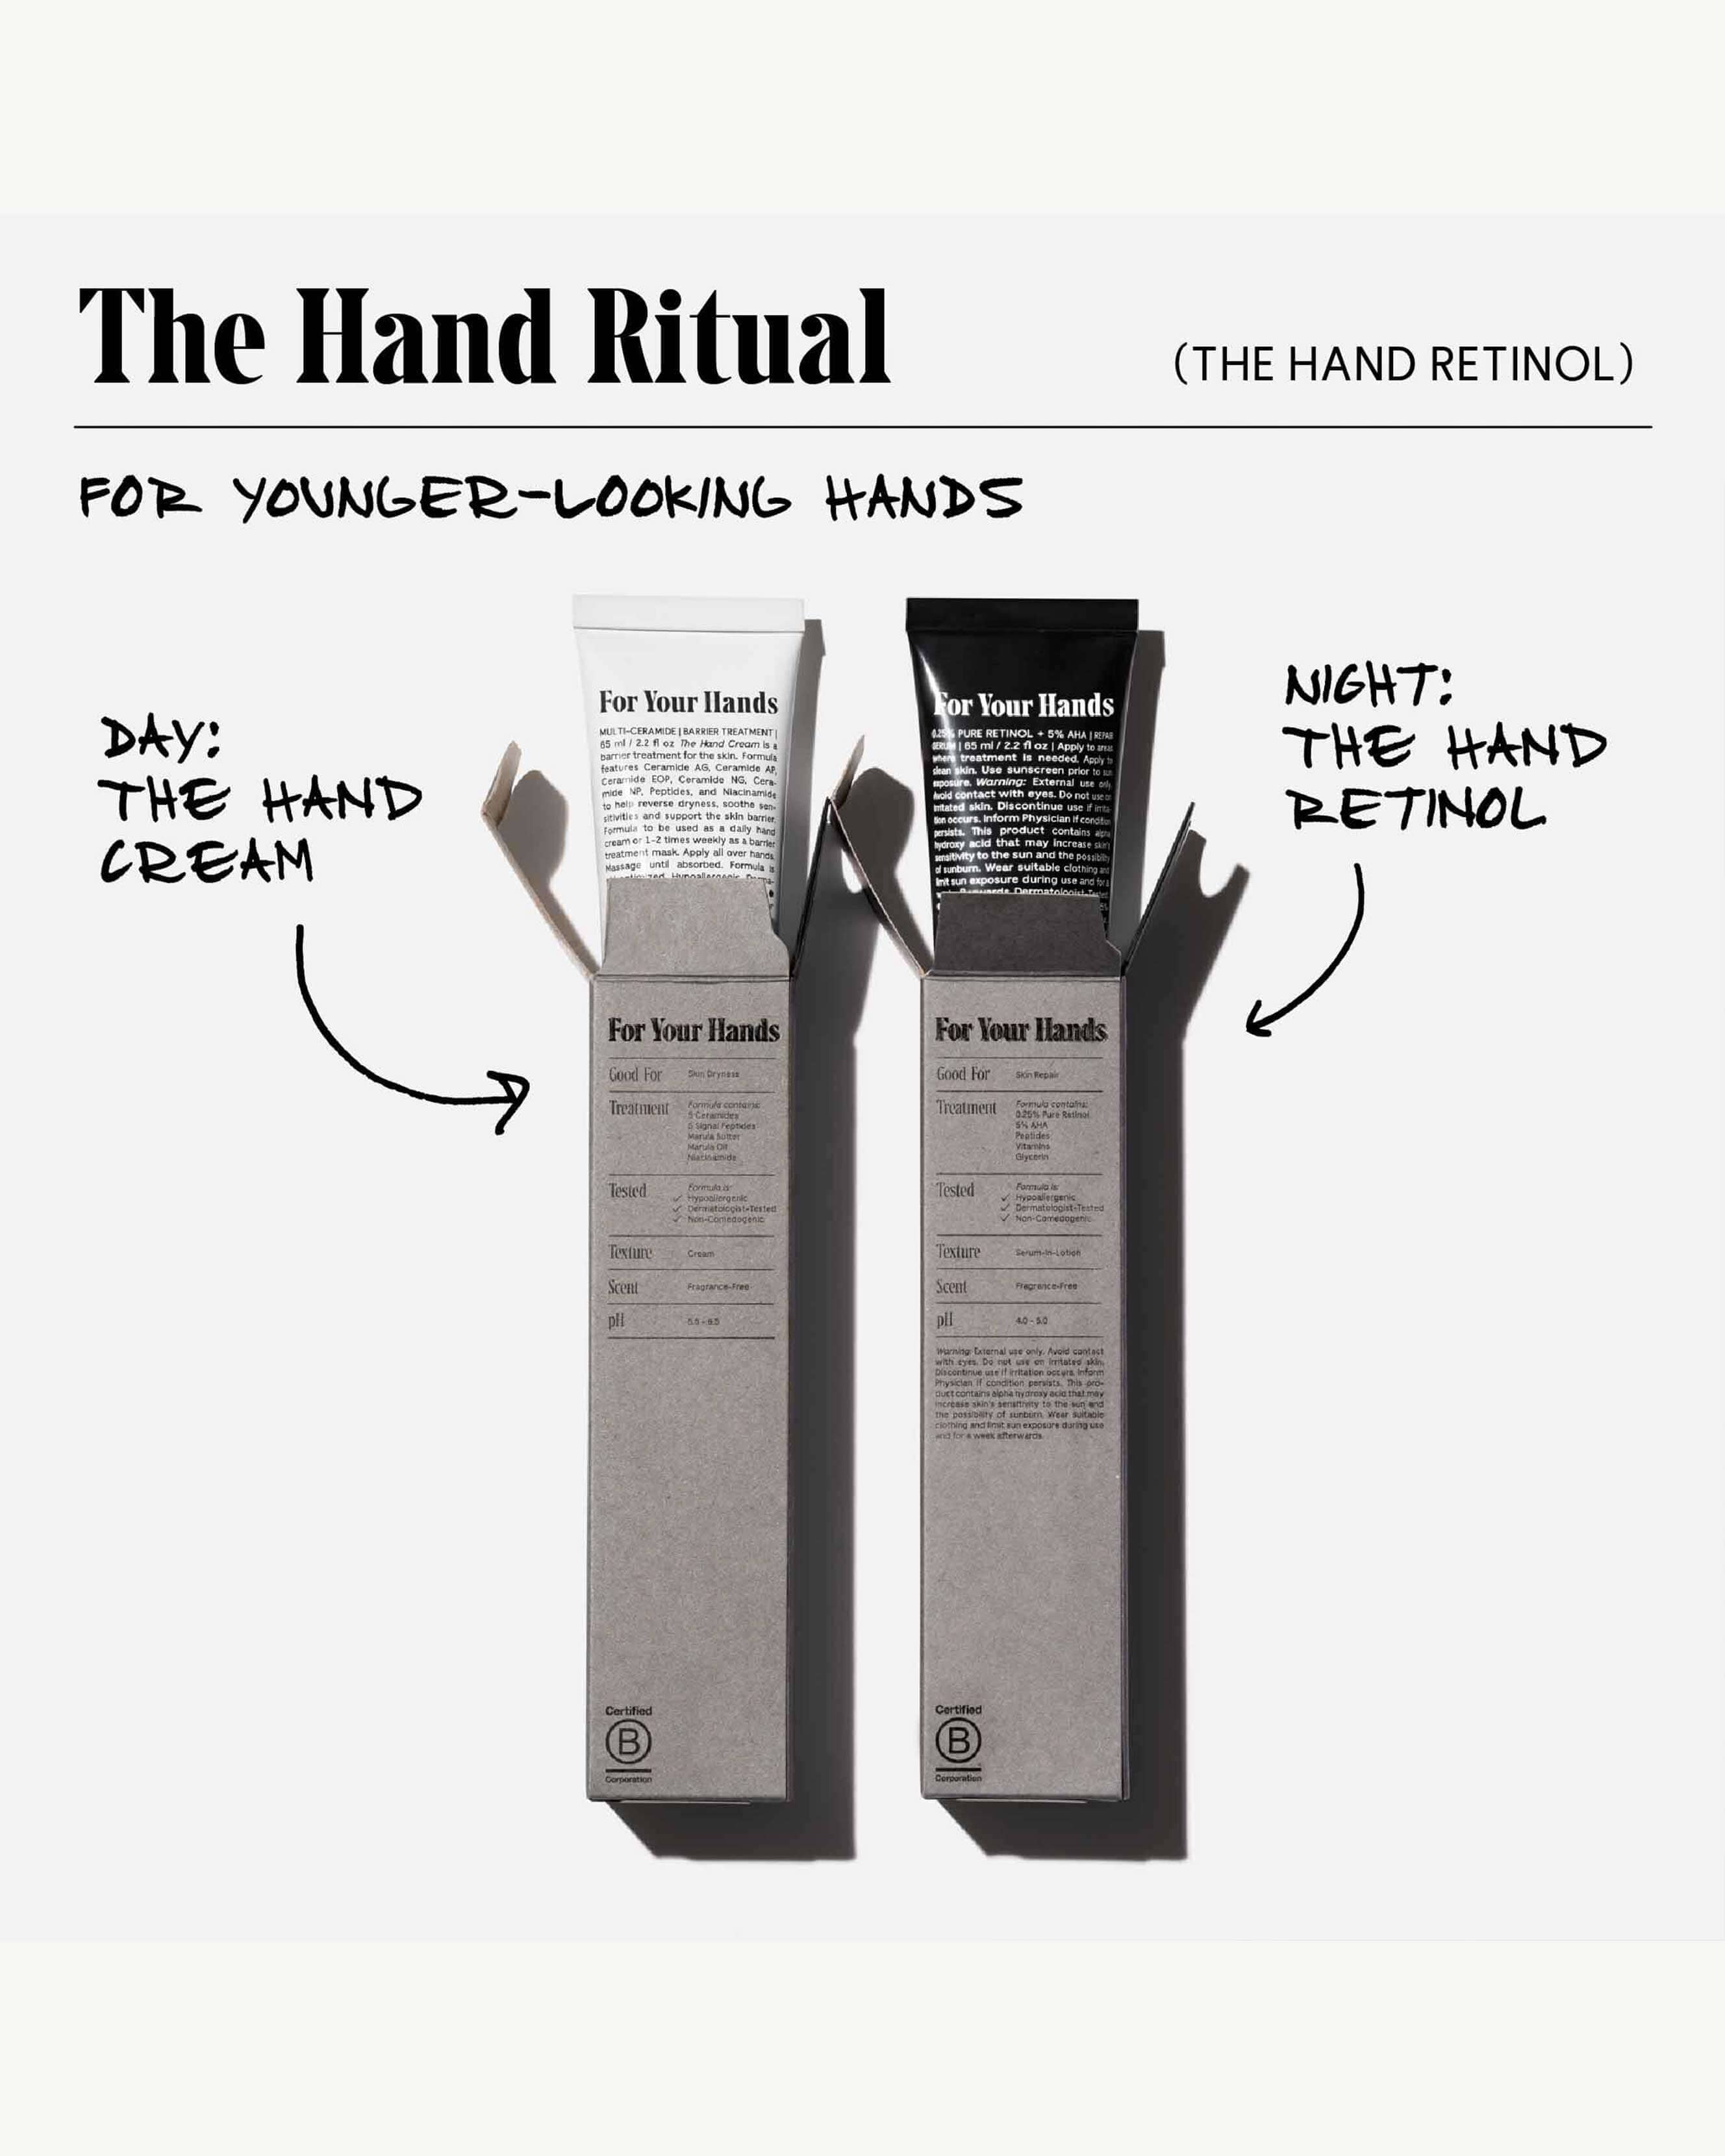 The Hand Retinol - Repair Treatment with 0.25% Pure Retinol + 5% AHA